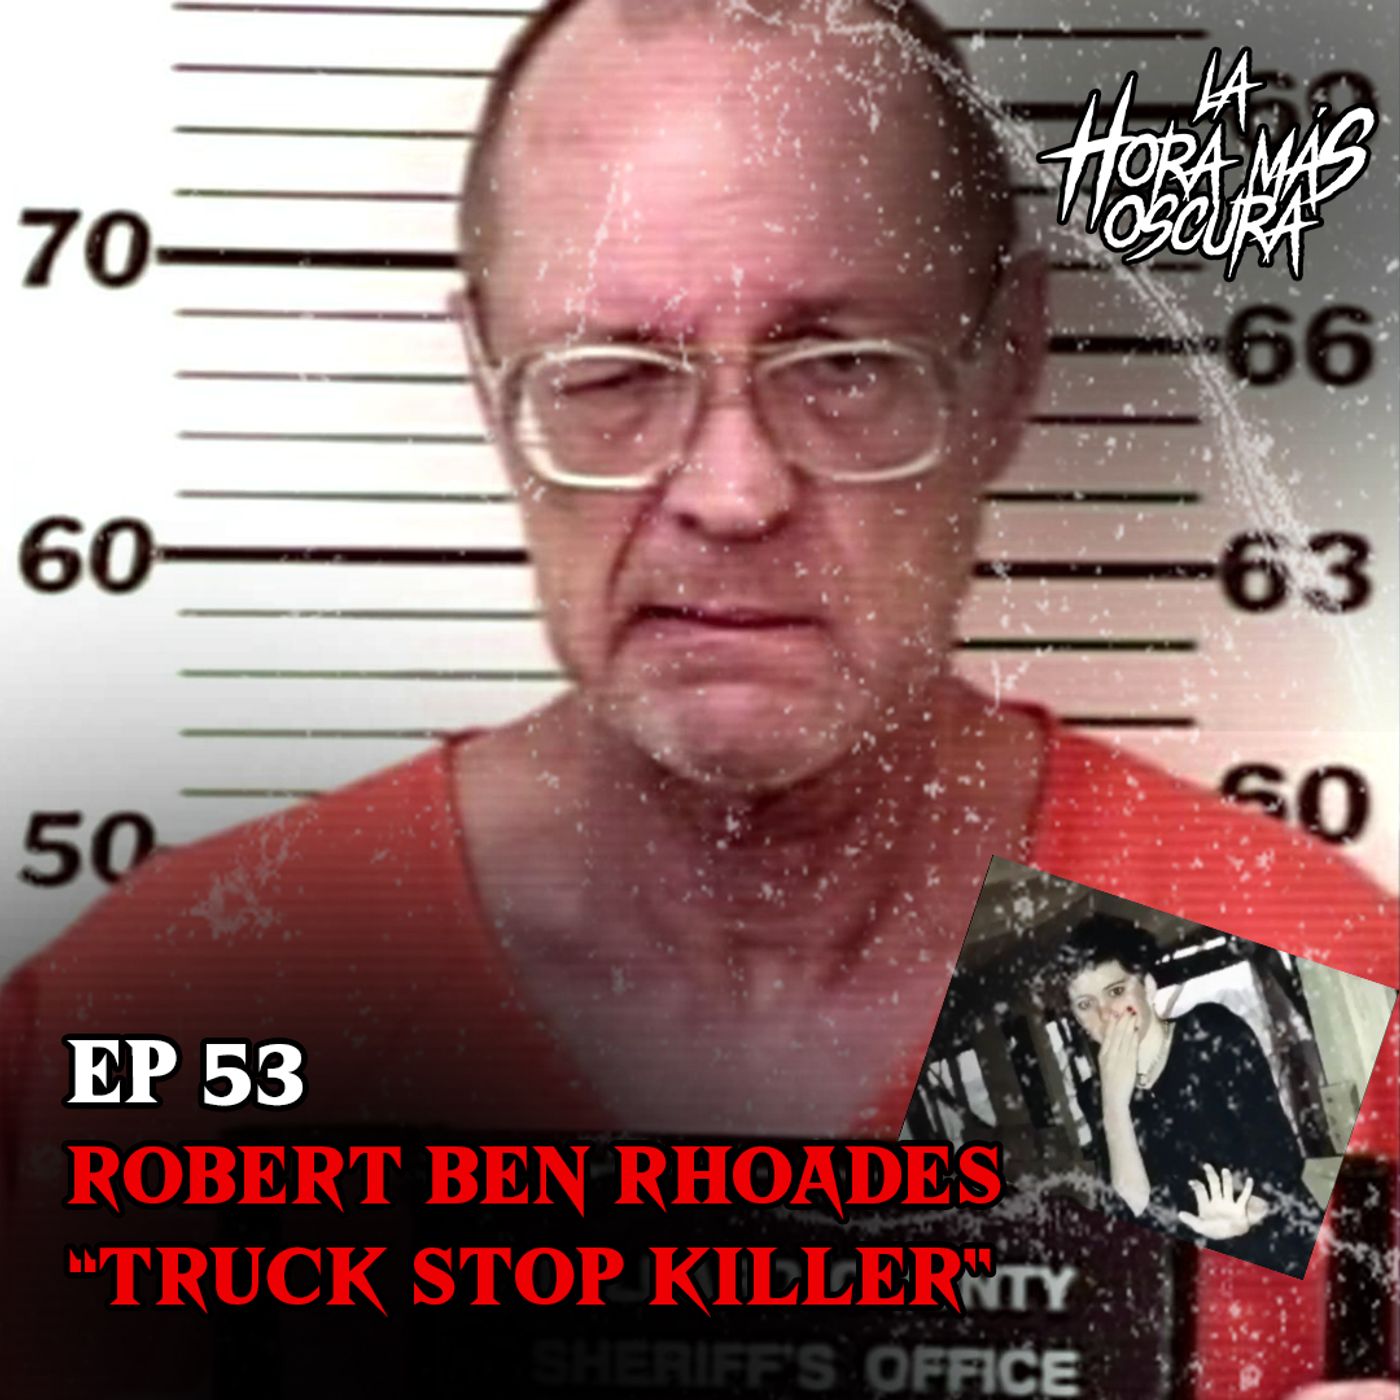 Ep53: Robert Ben Rhoades "Truck Stop Killer"